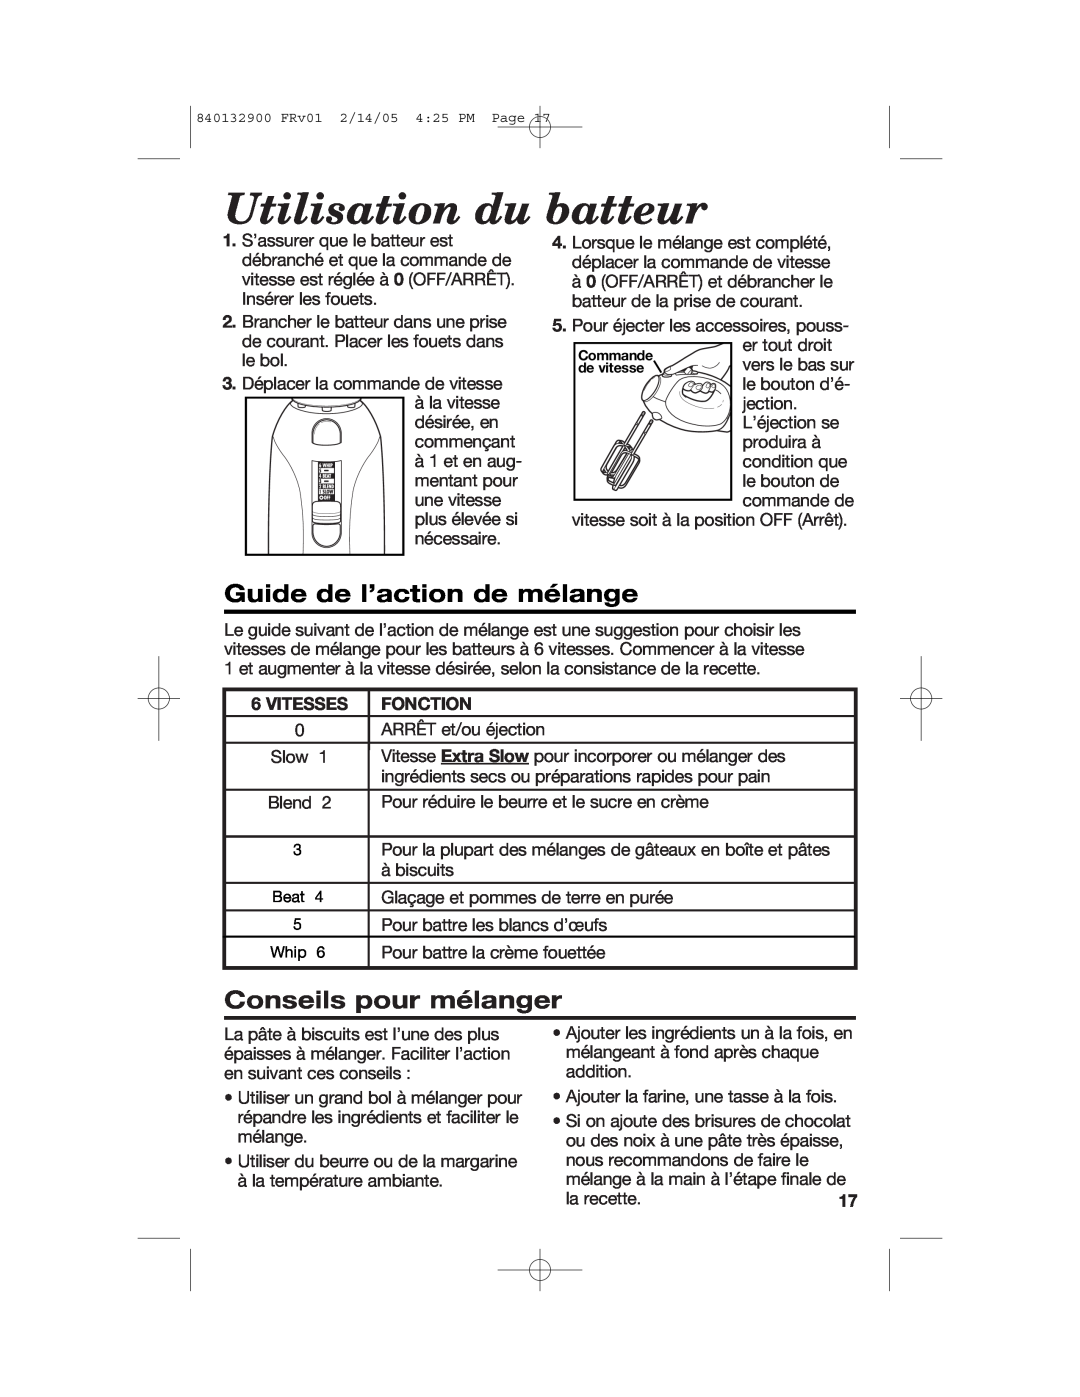 Hamilton Beach 840132900 manual Utilisation du batteur, Guide de l’action de mélange, Conseils pour mélanger 